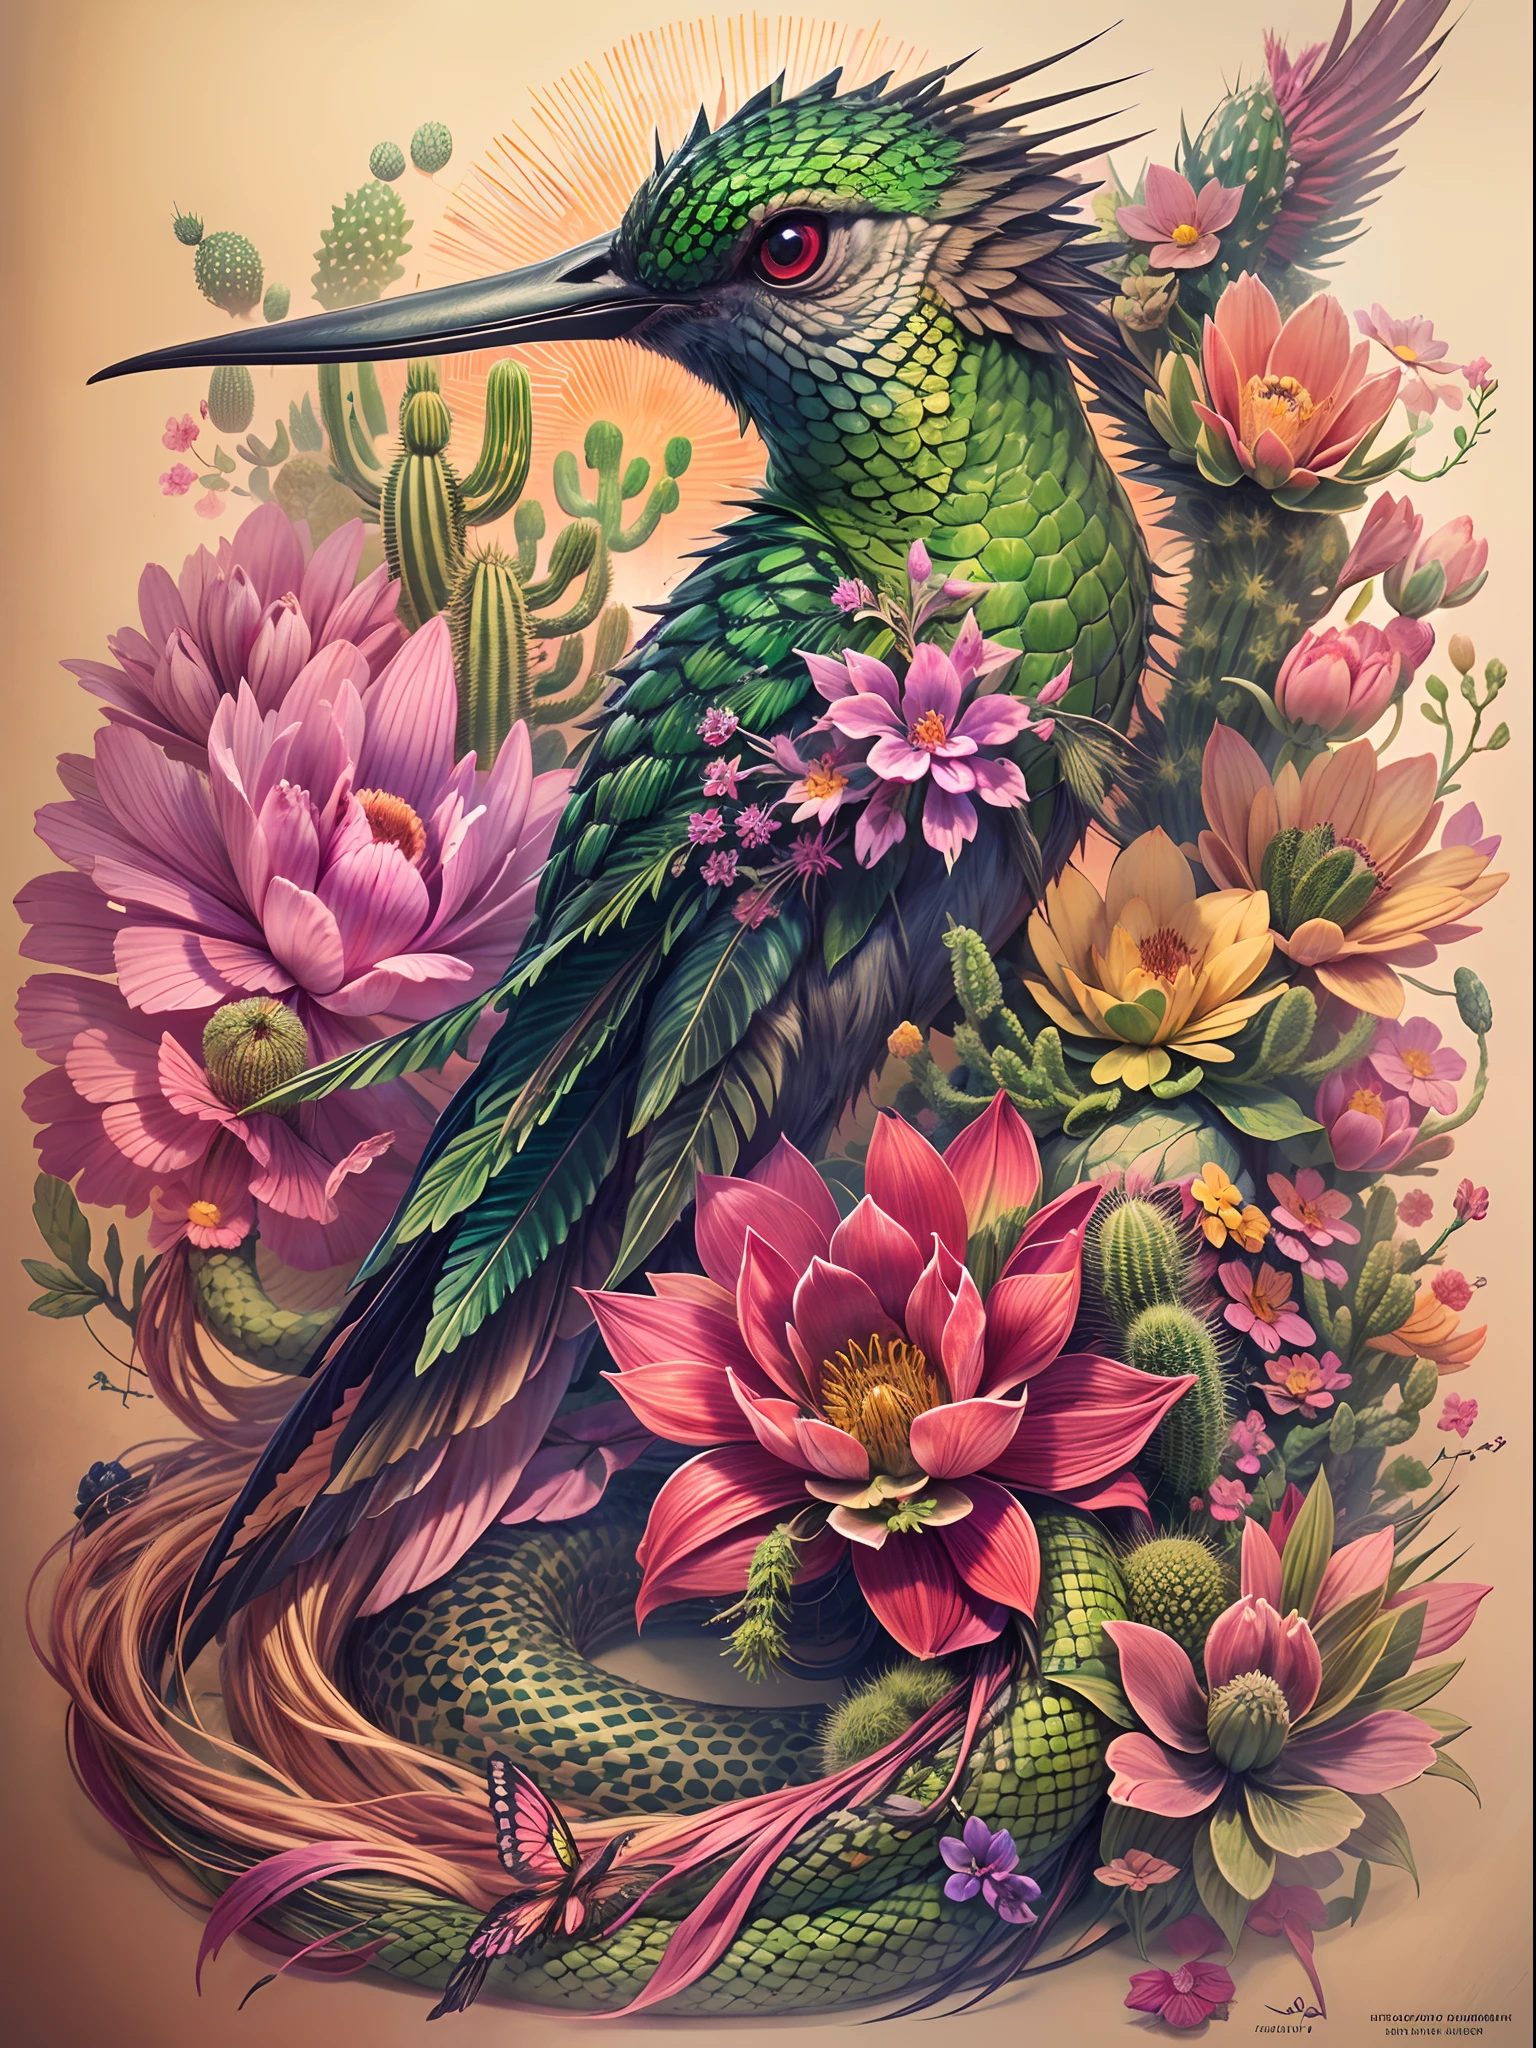 En este diseño de tatuaje., Crea una criatura surrealista que fusiona las características de un colibrí., una serpiente, y un cactus, con detalles intrincados como plumas iridiscentes, escamas verdes vibrantes con espinas, y delicadas flores que crecen en el cuerpo espinoso de la criatura., sobre un fondo oscuro y de mal humor con toques de tonos de puesta de sol, para crear una imagen fascinante e inolvidable.